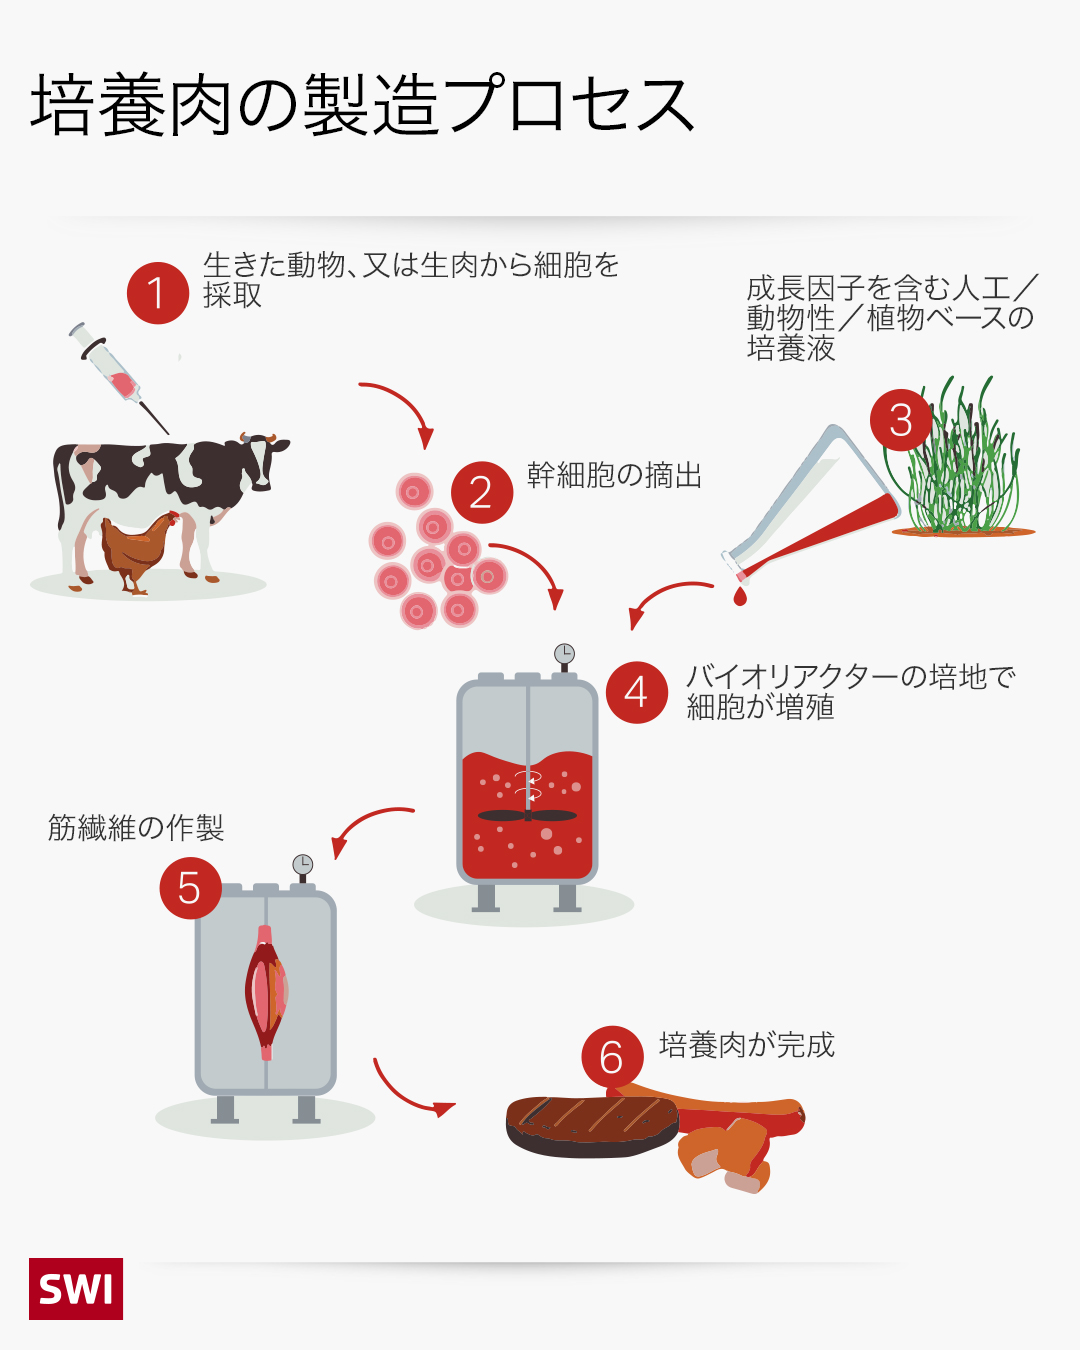 培養肉の製造プロセス